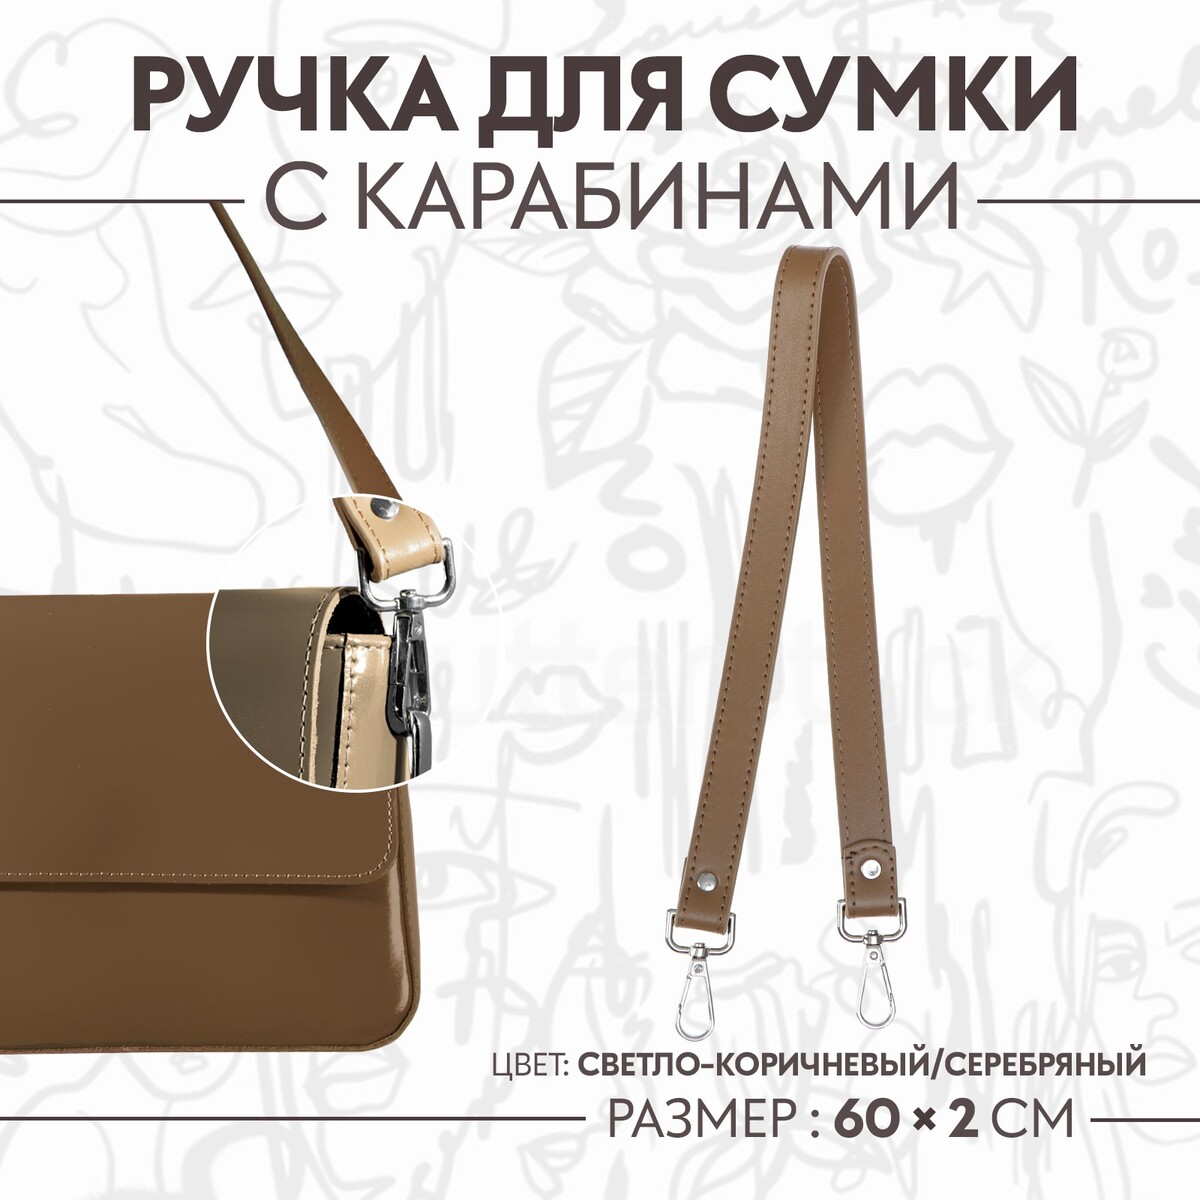 Ручка для сумки, с карабинами, 60 × 2 см, цвет светло-коричневый ручка для сумки с цепочками и карабинами 120 × 1 8 см бордовый